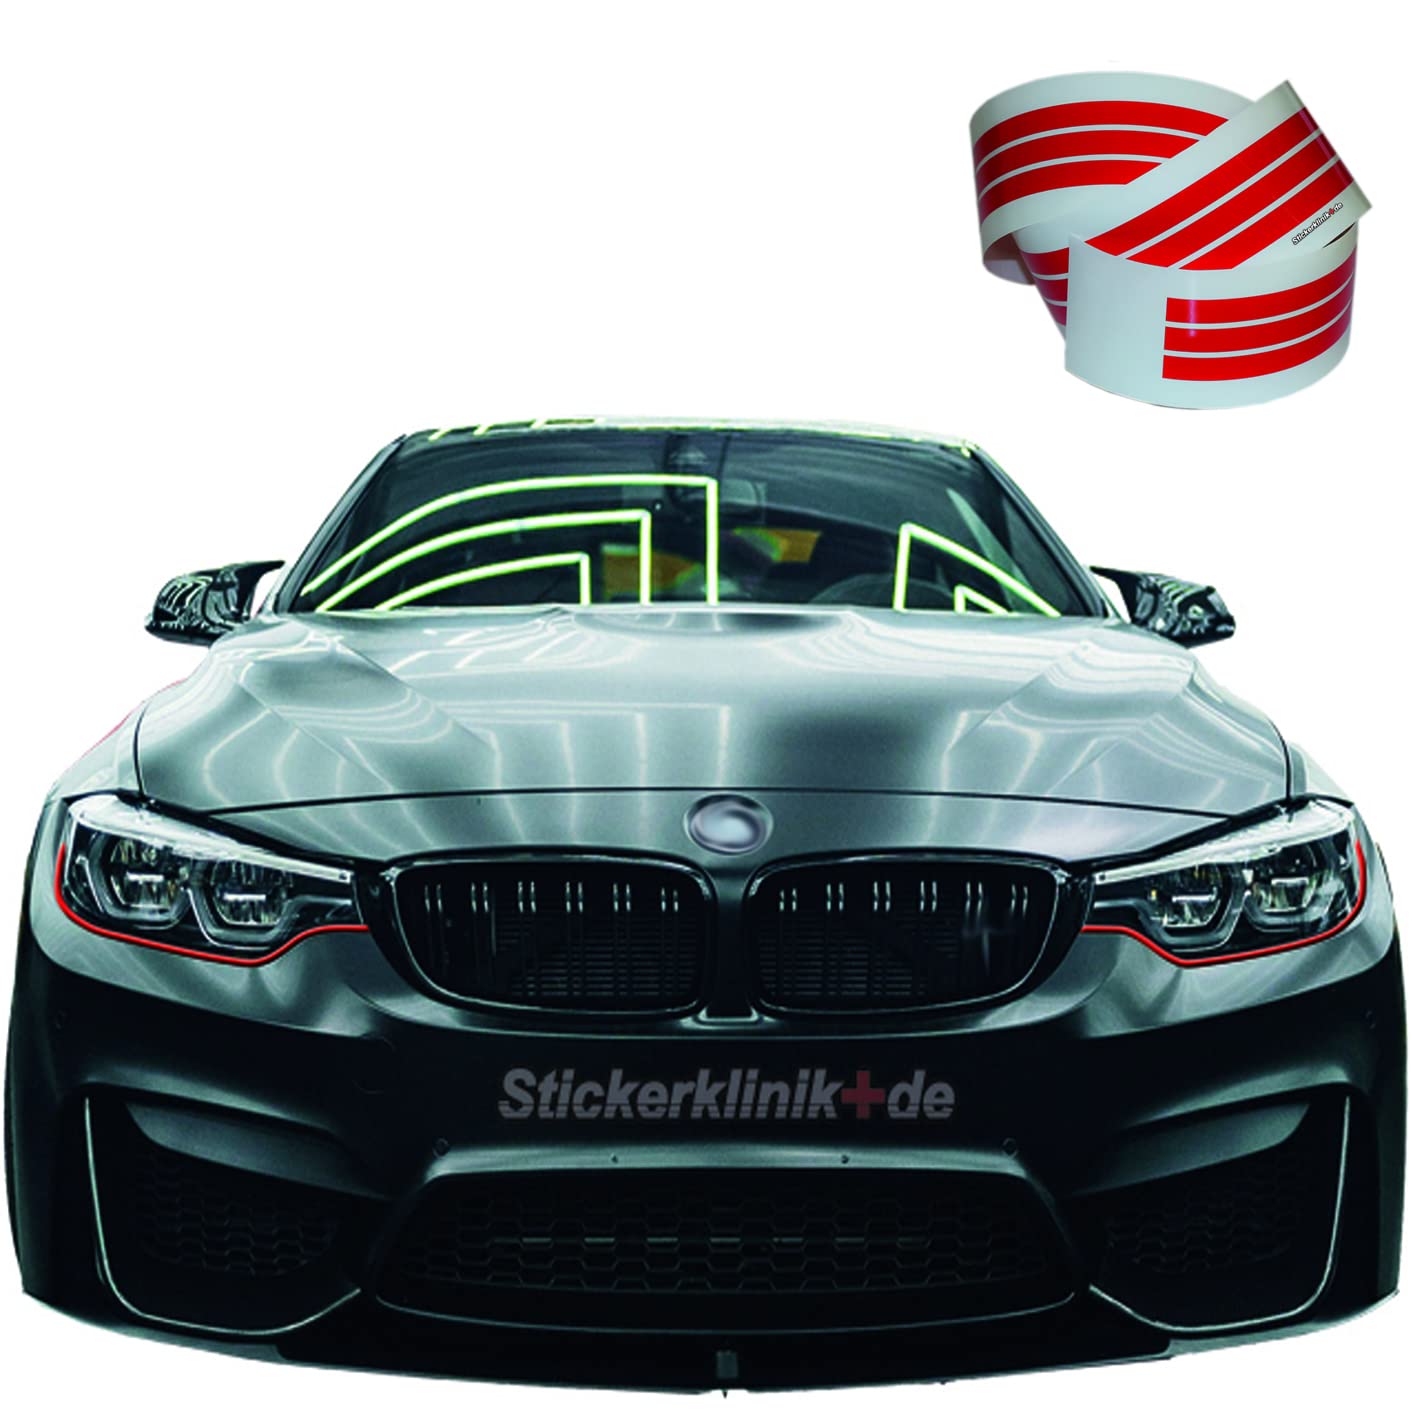 Folie Auto Scheinwerfer Böser Blick Stripes Roter Strich Lines für Autoscheinwerfer Carlights tint light (Rot) von 1A Style Sticker